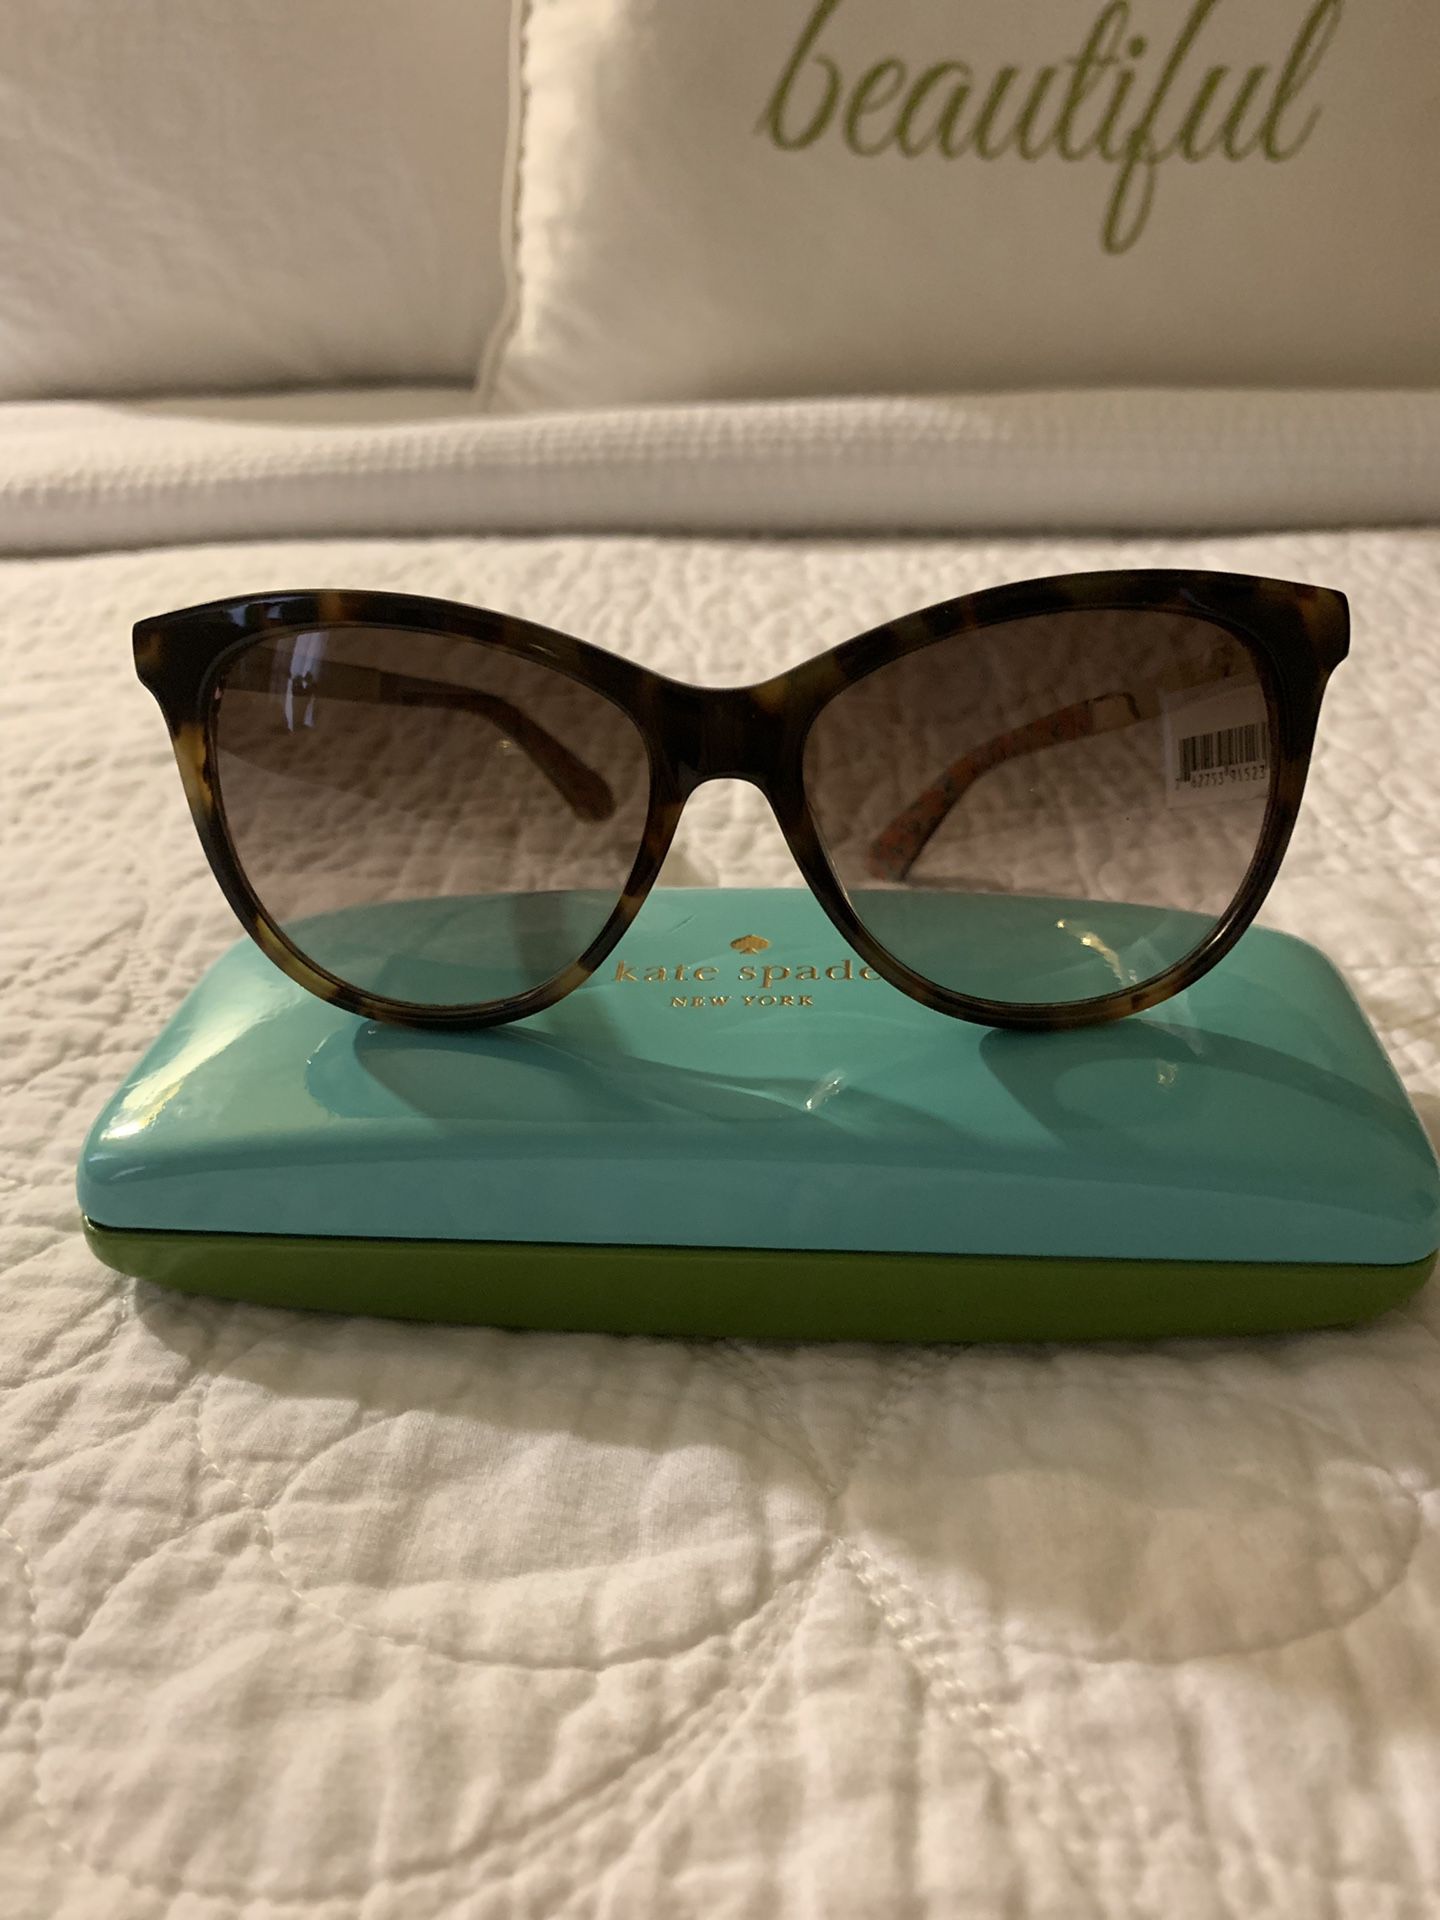 Kate spade sunglasses original